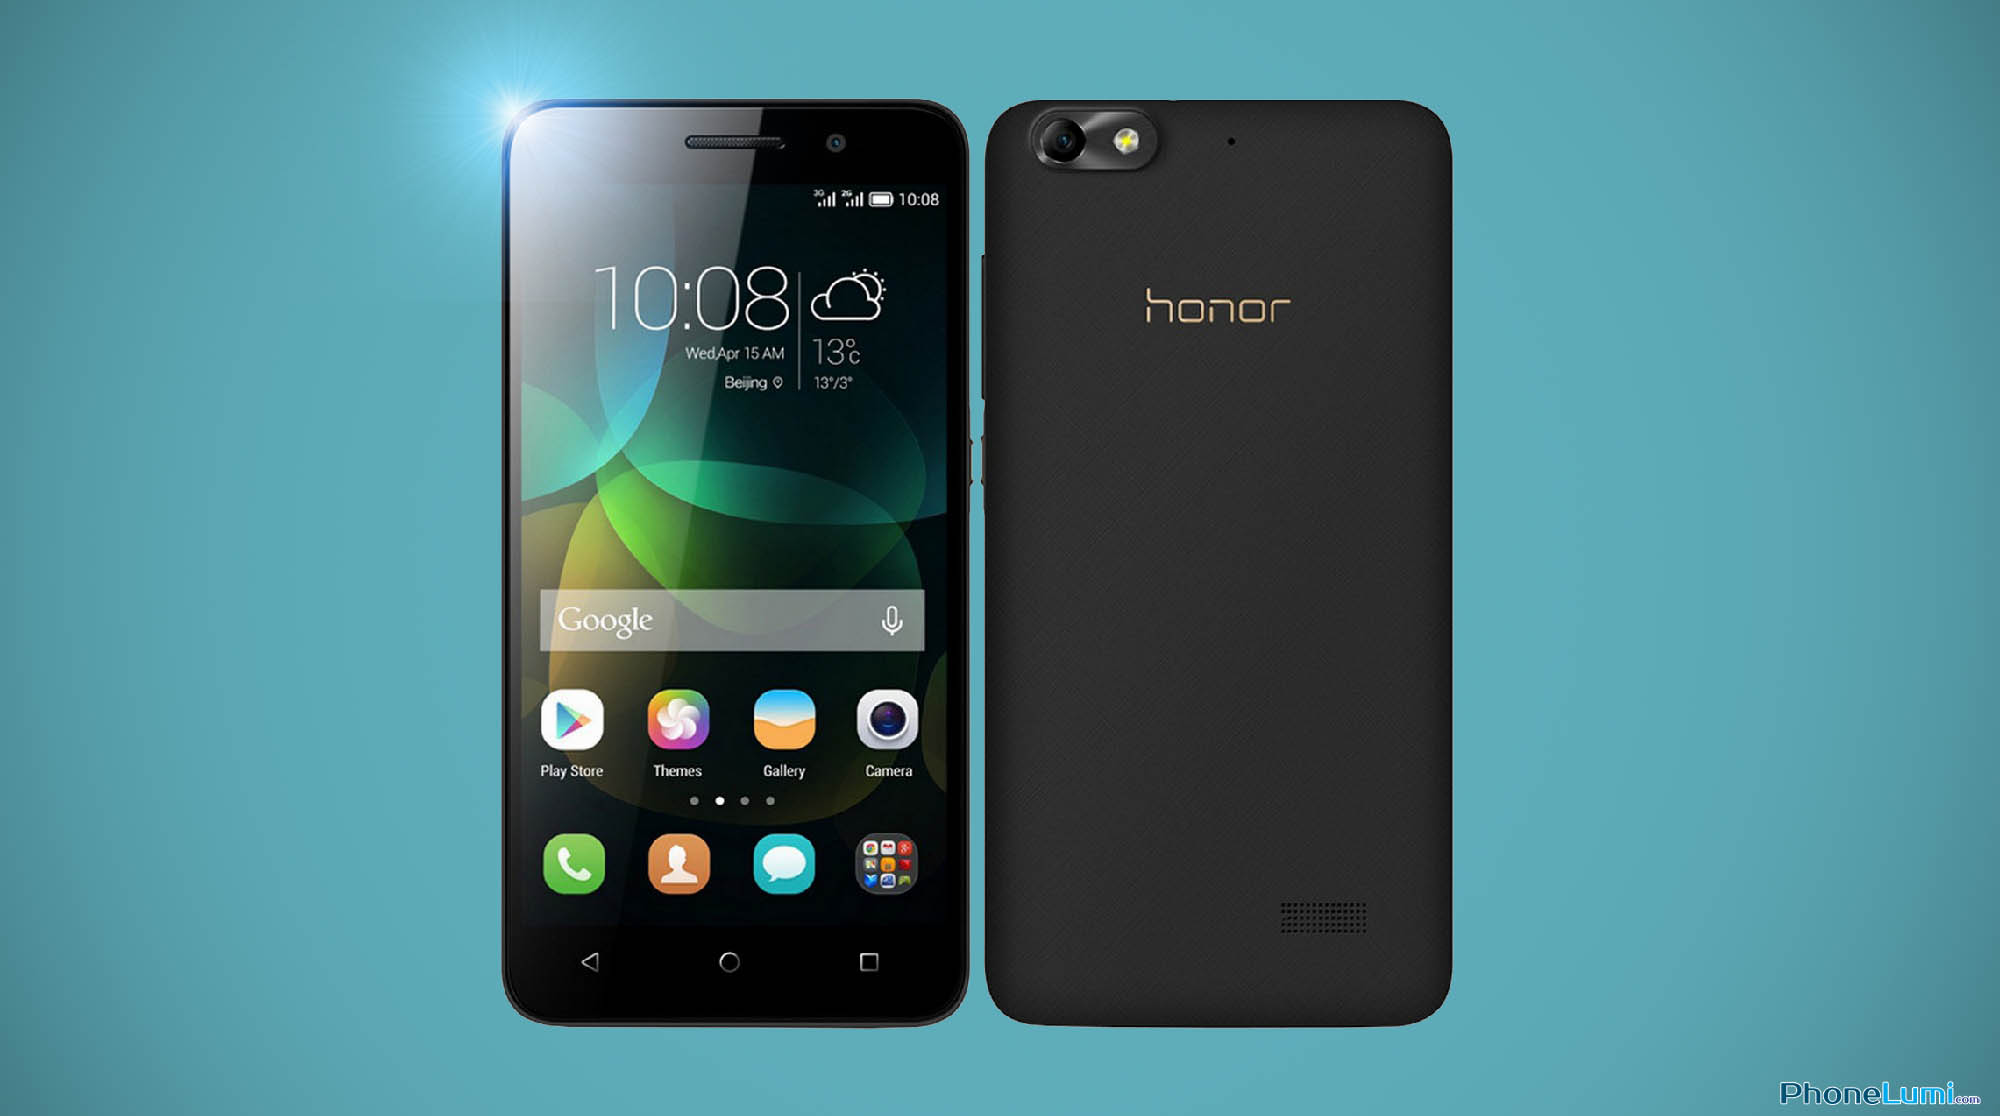 Rom gốc Huawei Honor 4C tiếng việt